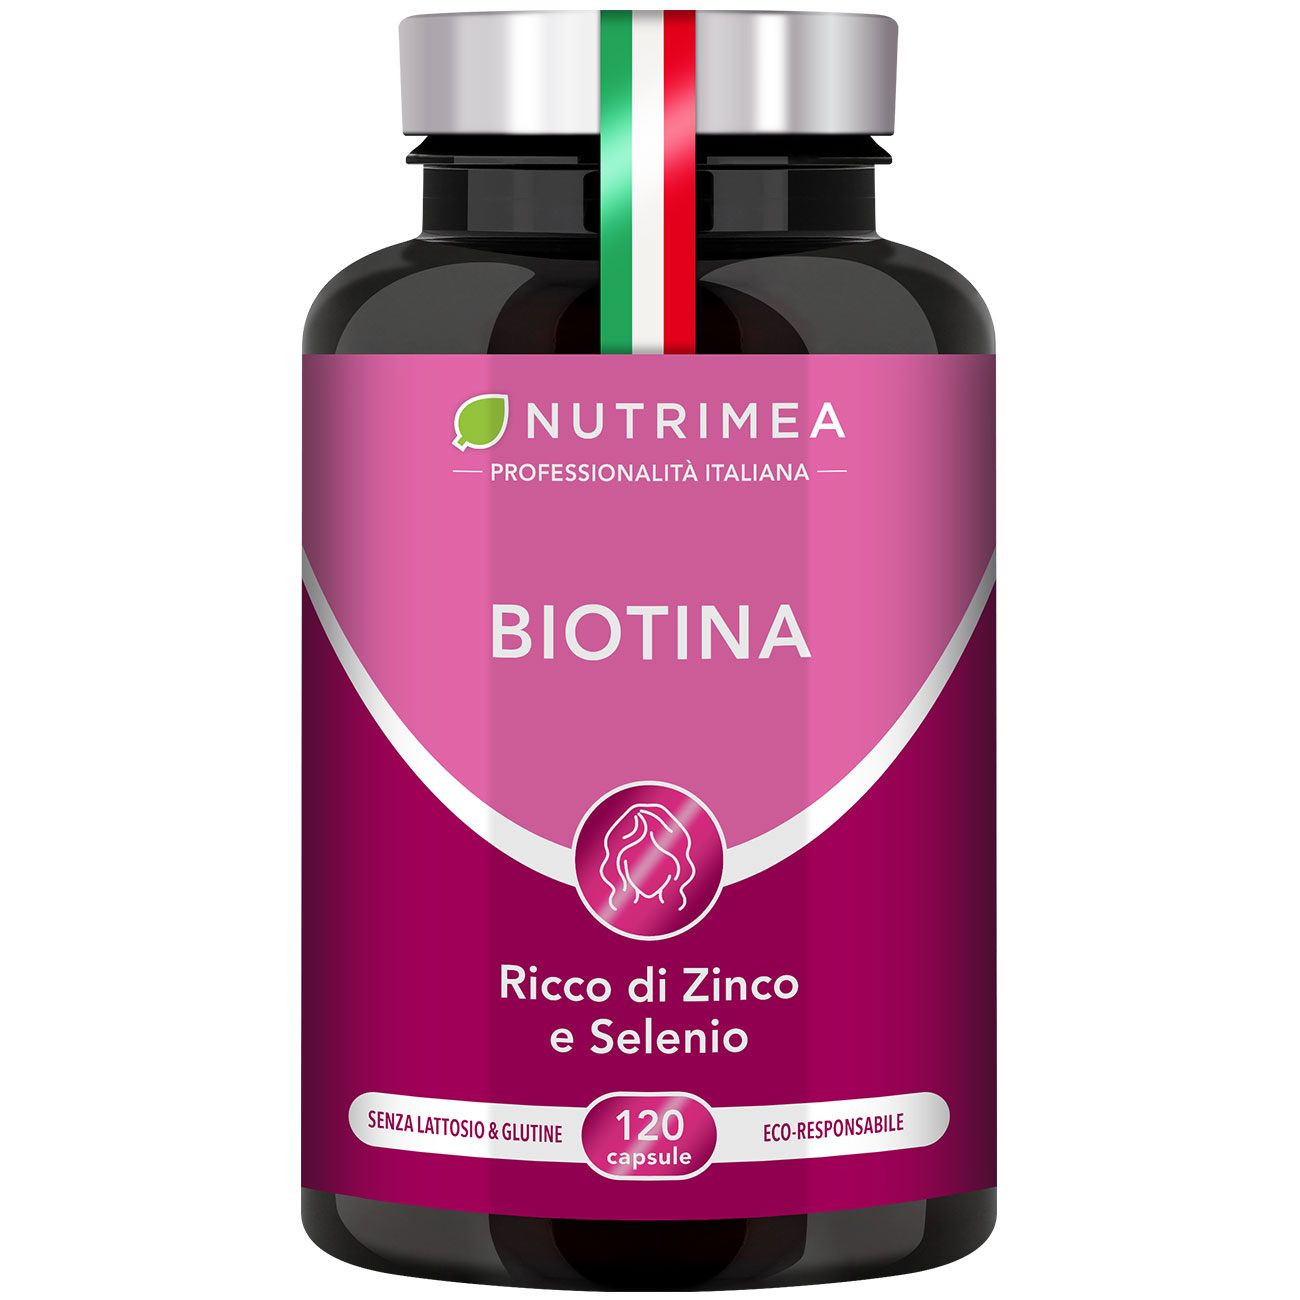 Immagine dell'integratore alimentare Biotina Nutrimea - Arricchita con Zinco e Selenio